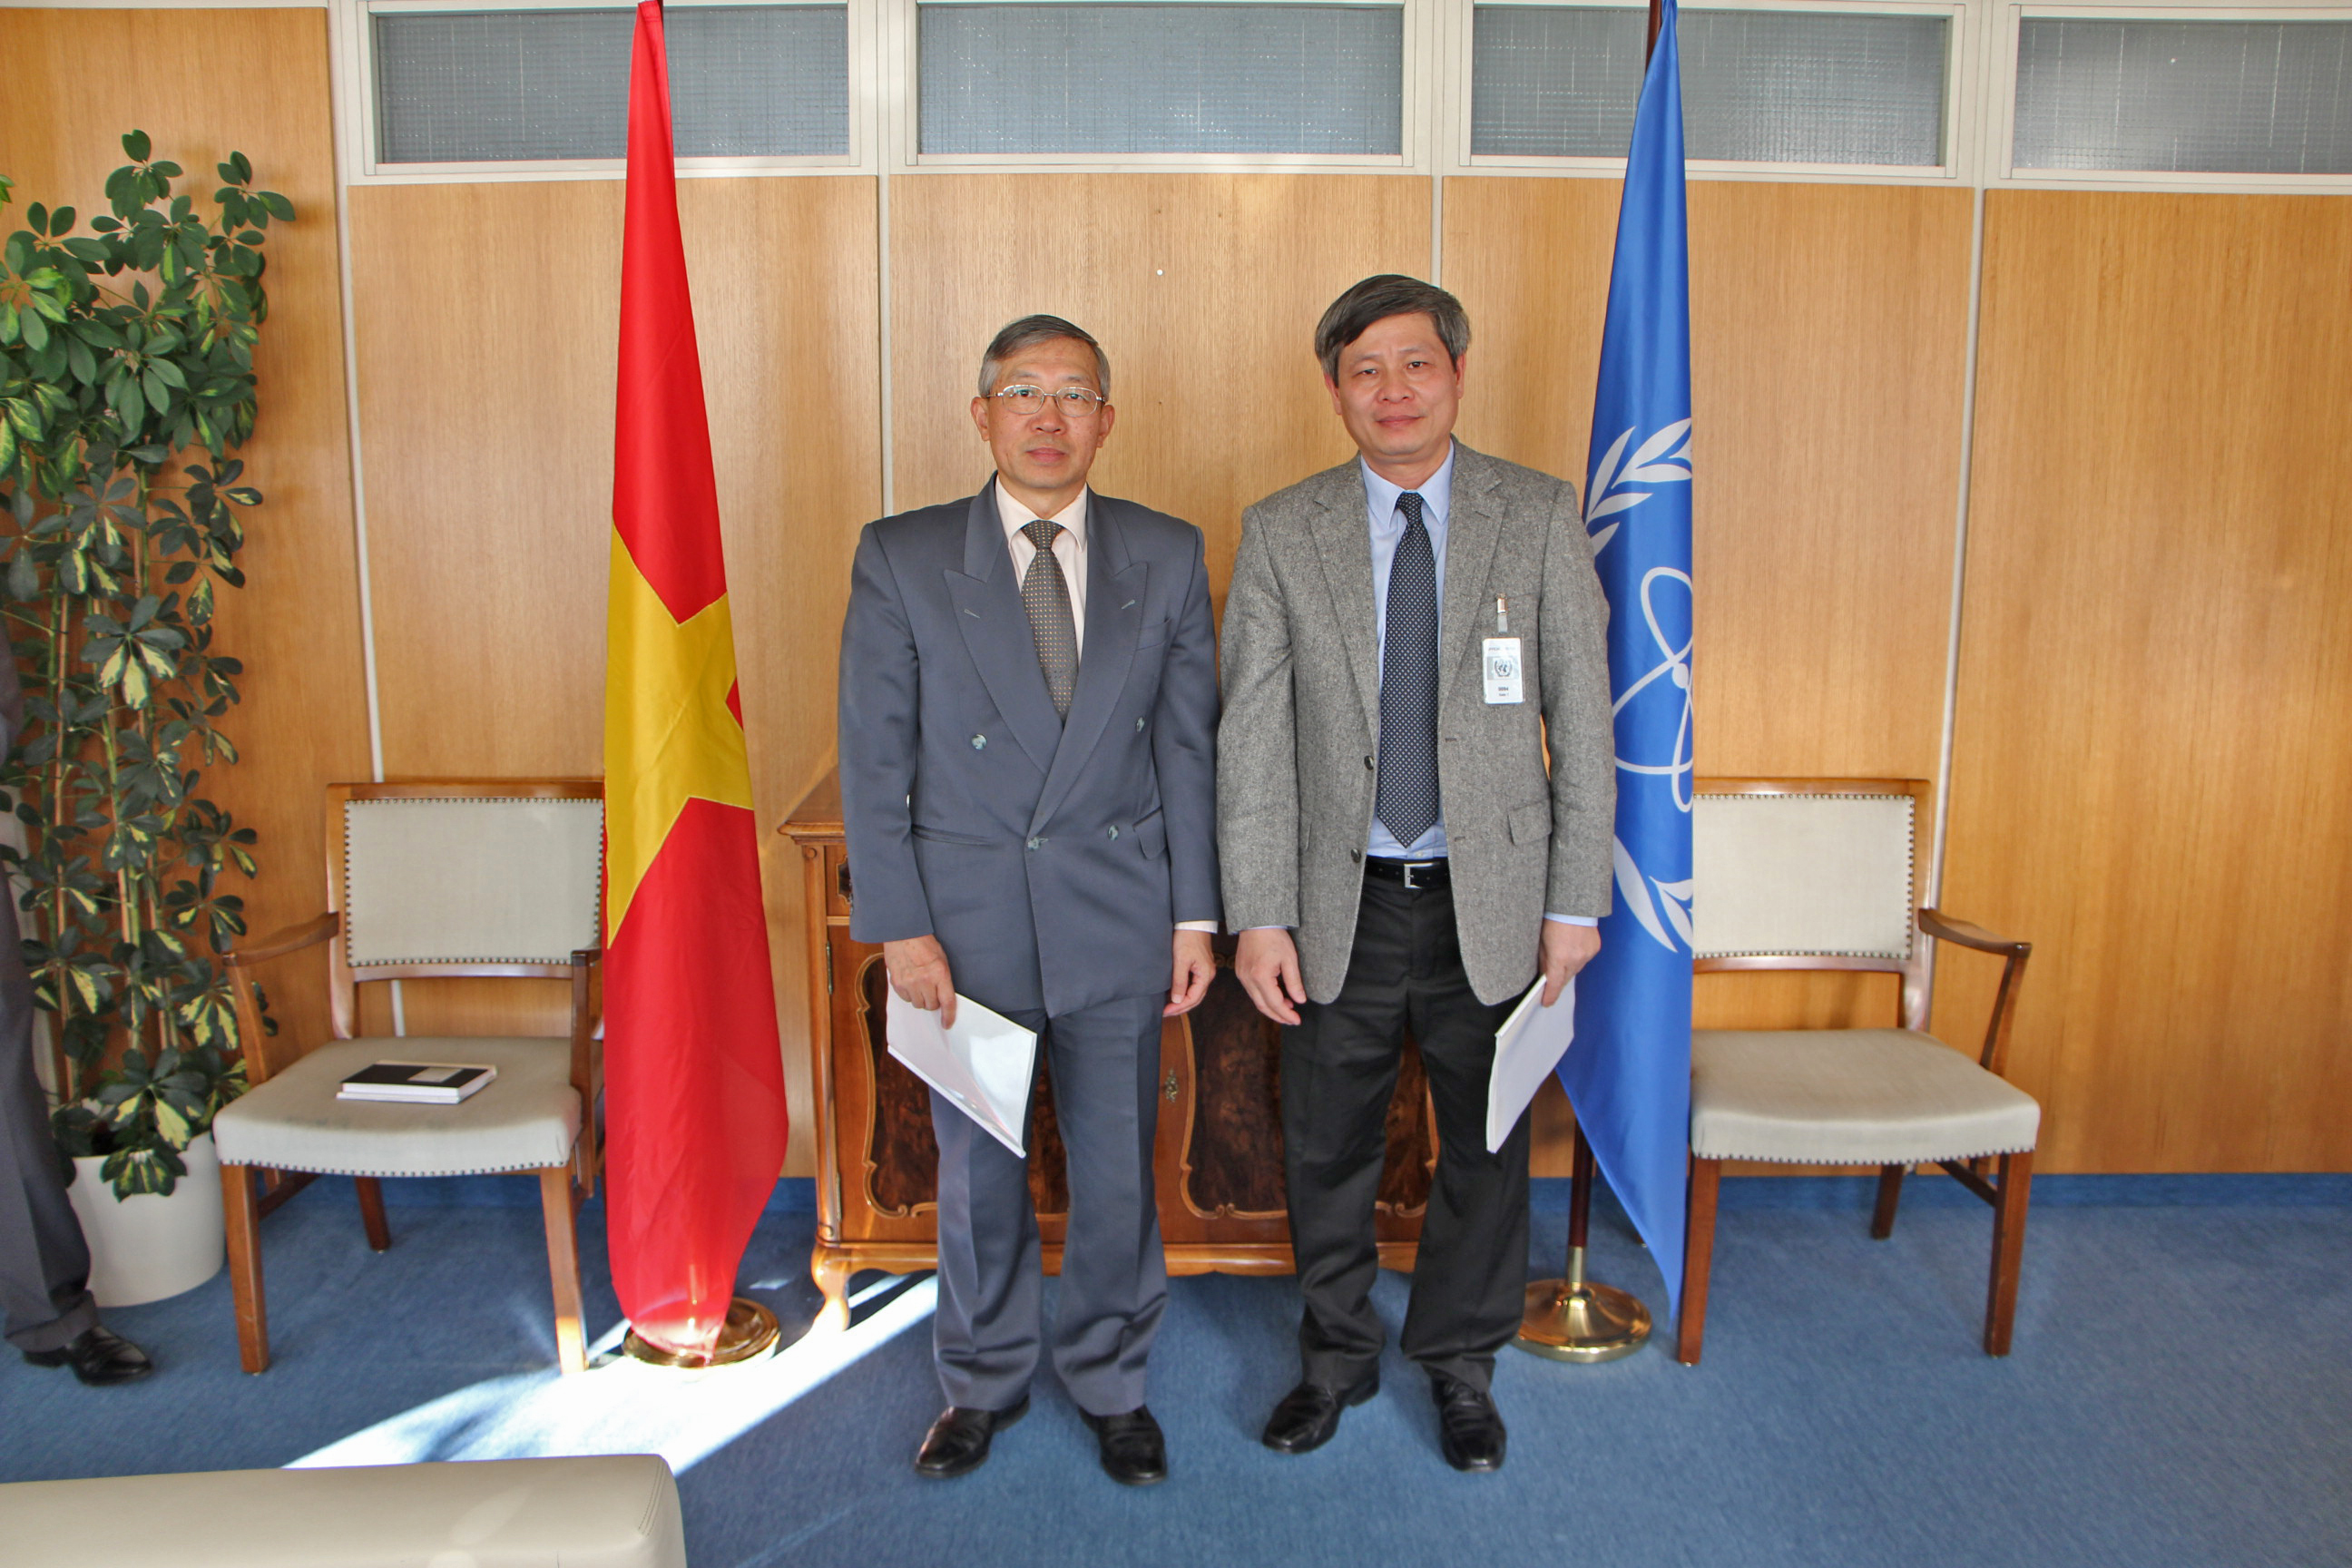 Thứ trưởng Bộ Khoa học và Công nghệ Phạm Công Tạc cùng Ngài Phó Tổng giám đốc IAEA Dazhu Yang (bên trái) trong lễ ký kết.